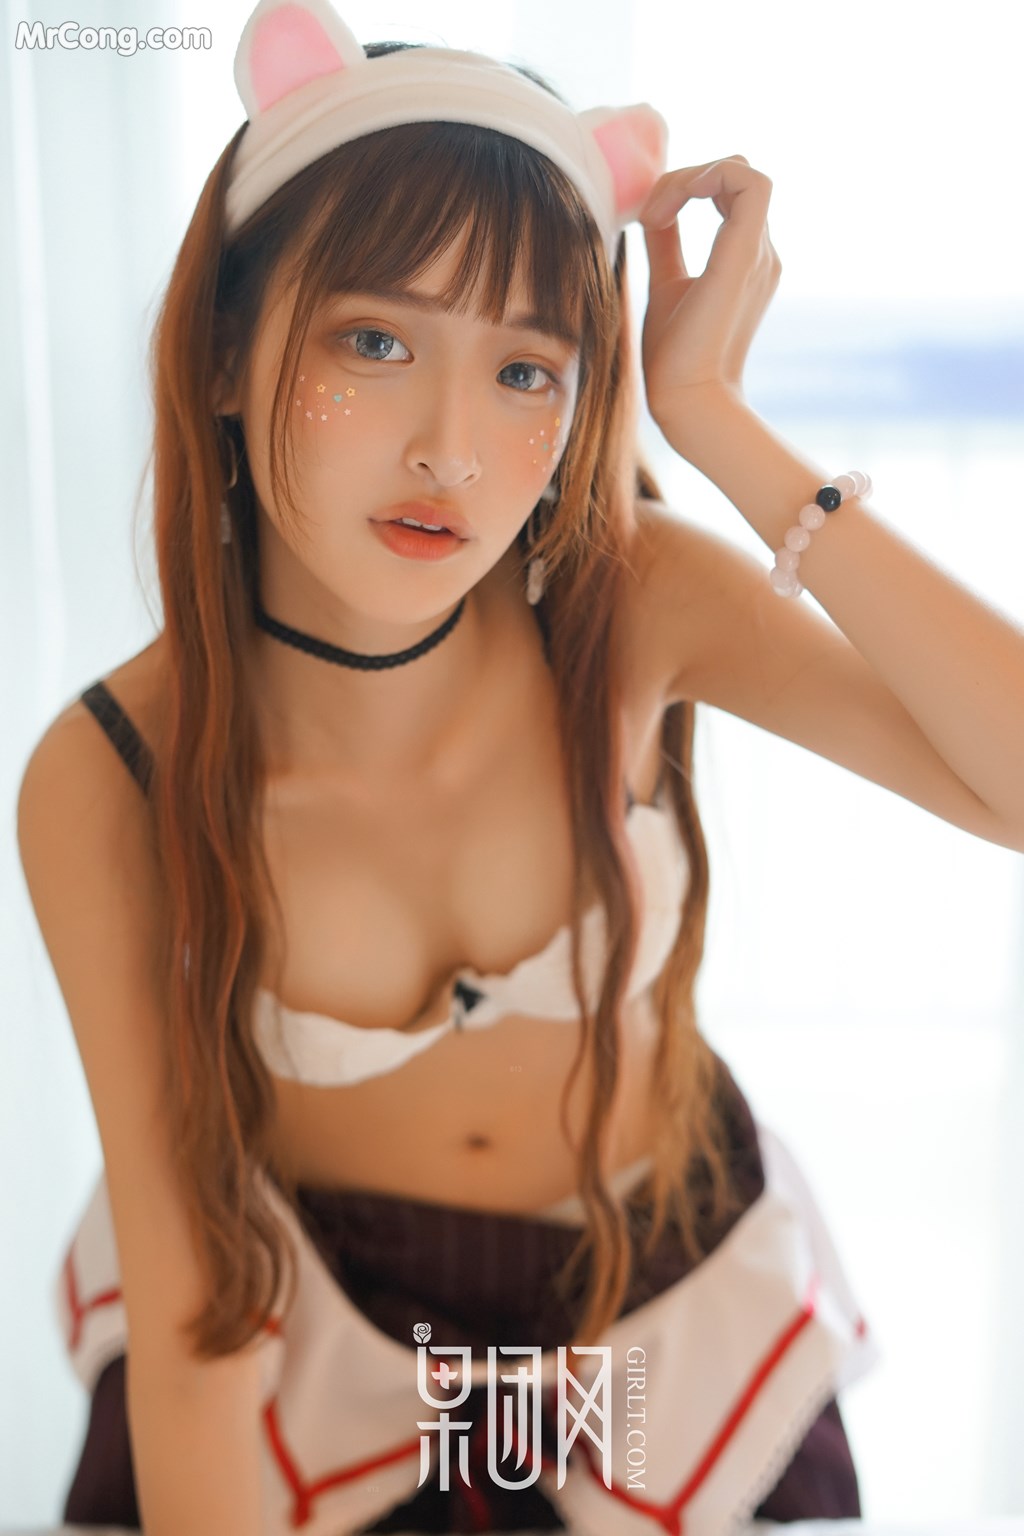 GIRLT No.036: Model Bei Ke (little 贝壳) (56 photos)